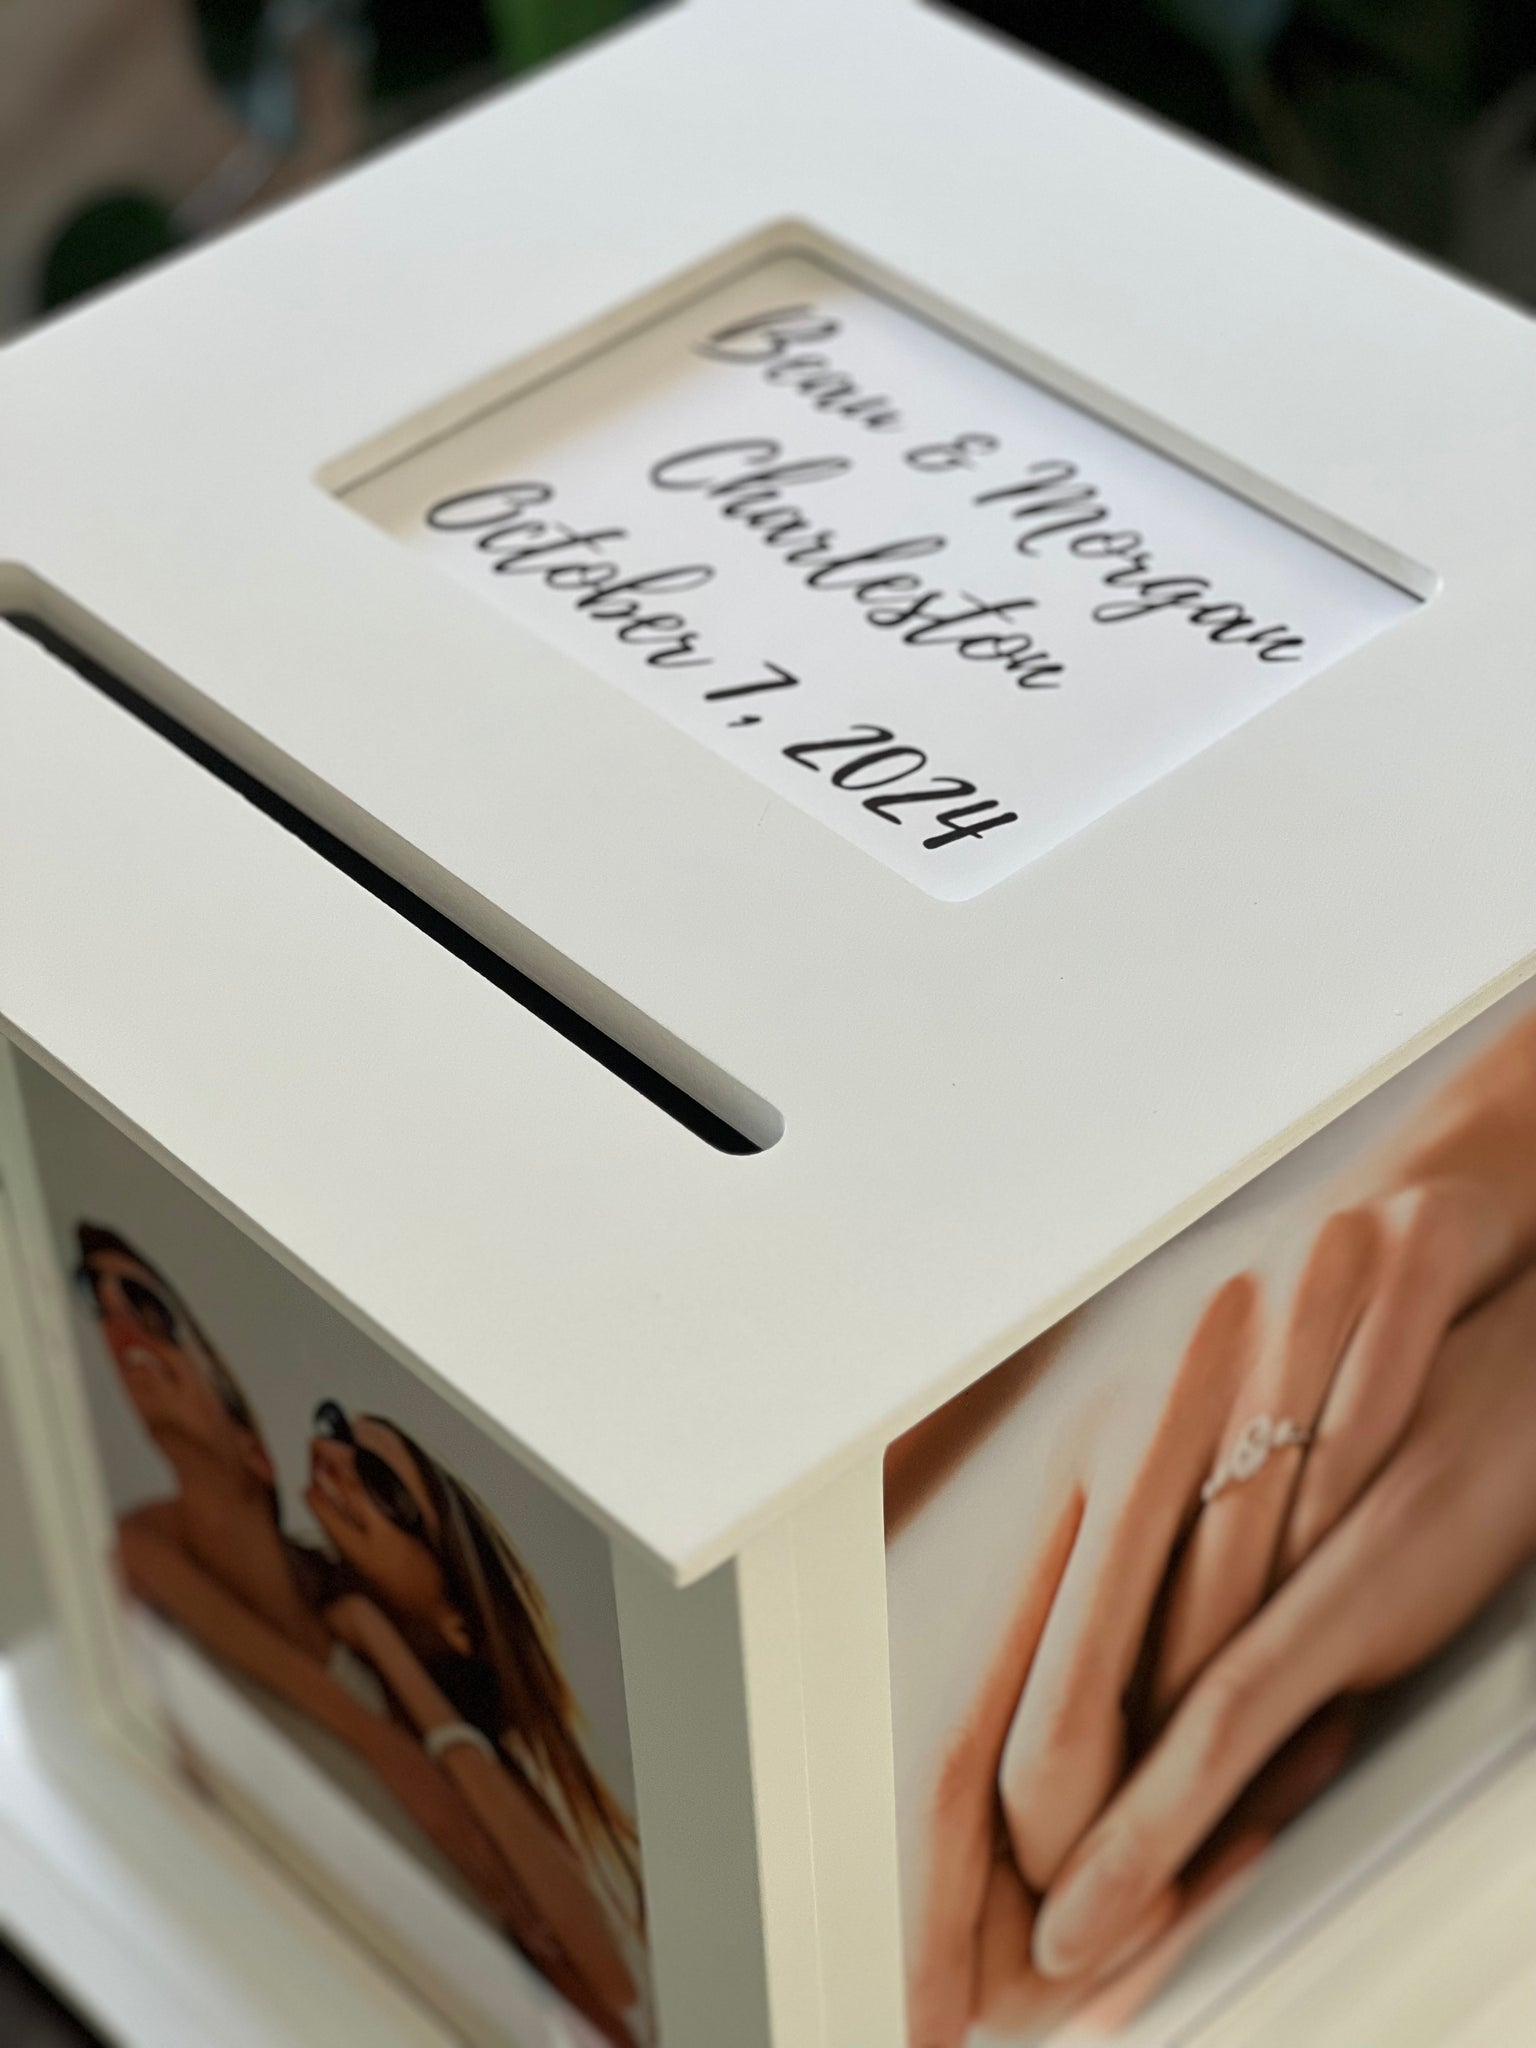 Diy Wedding Card Box Rustic Wood Card Box Gift Card Holder for Wedding  Banquet